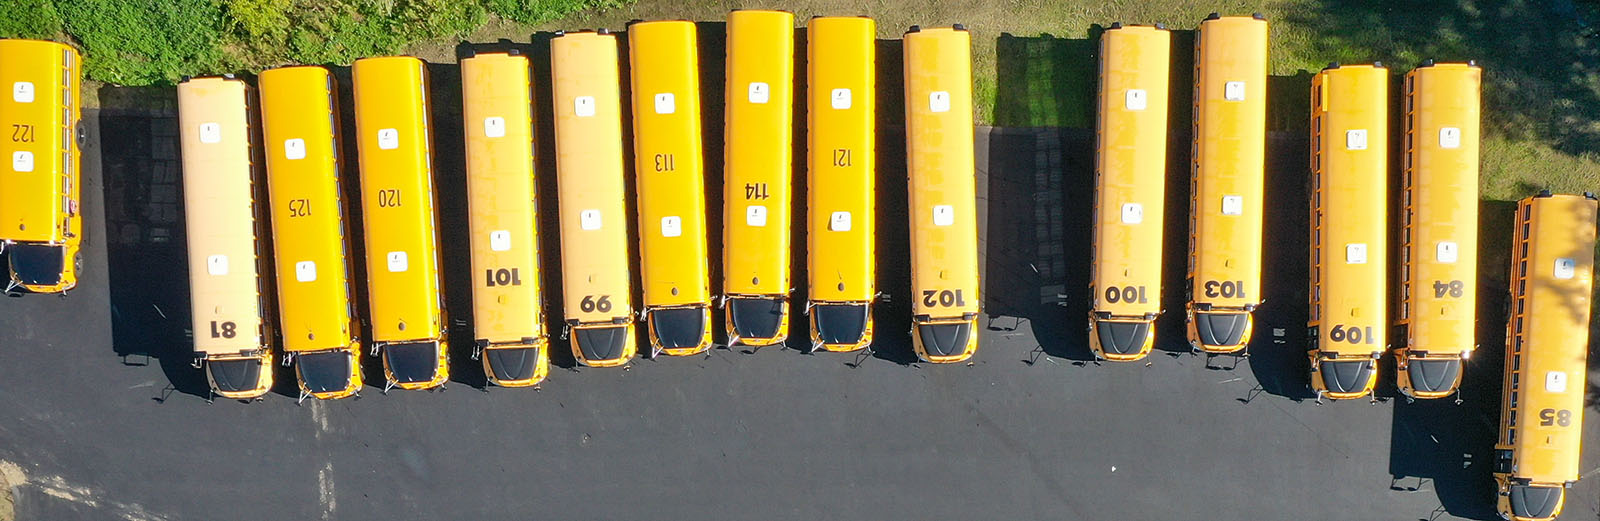 Ярко-желтые школьные автобусы выстроились на стоянке.